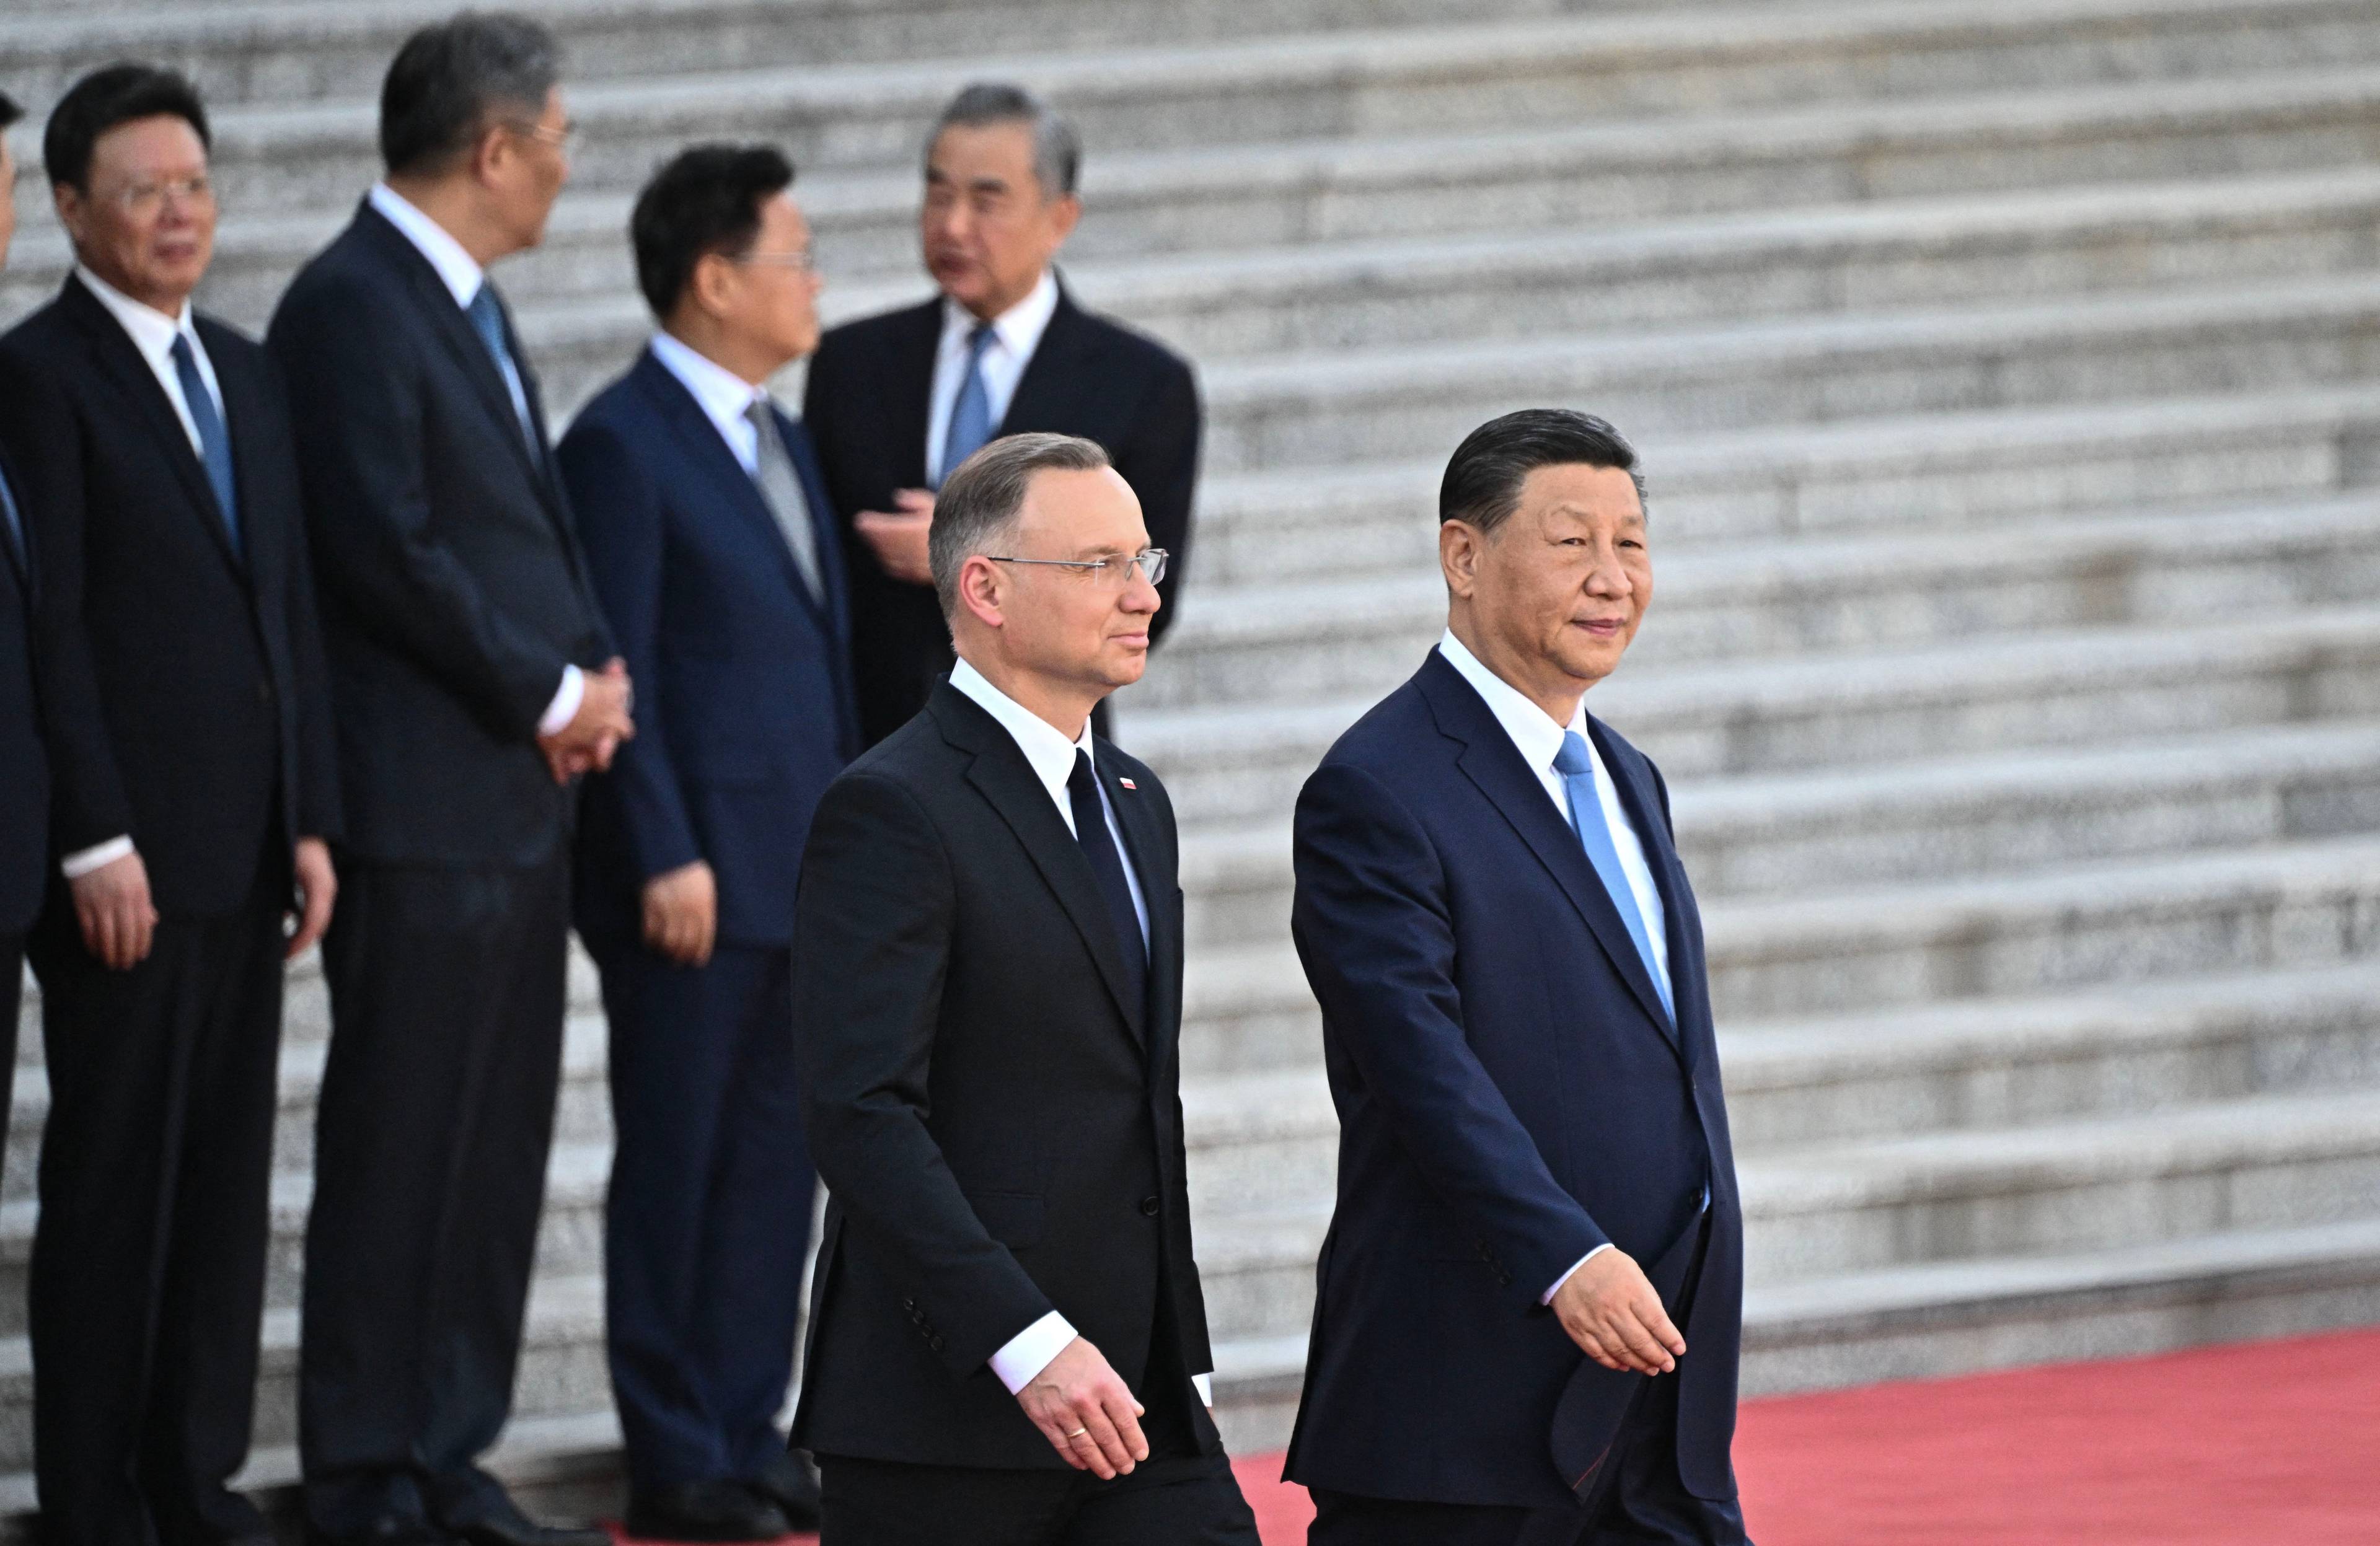 Prezydent Andrzej Duda i przewodniczący Chińskiej Republiki Ludowej Xi Jinping idą ramie w ramie na tle schodów